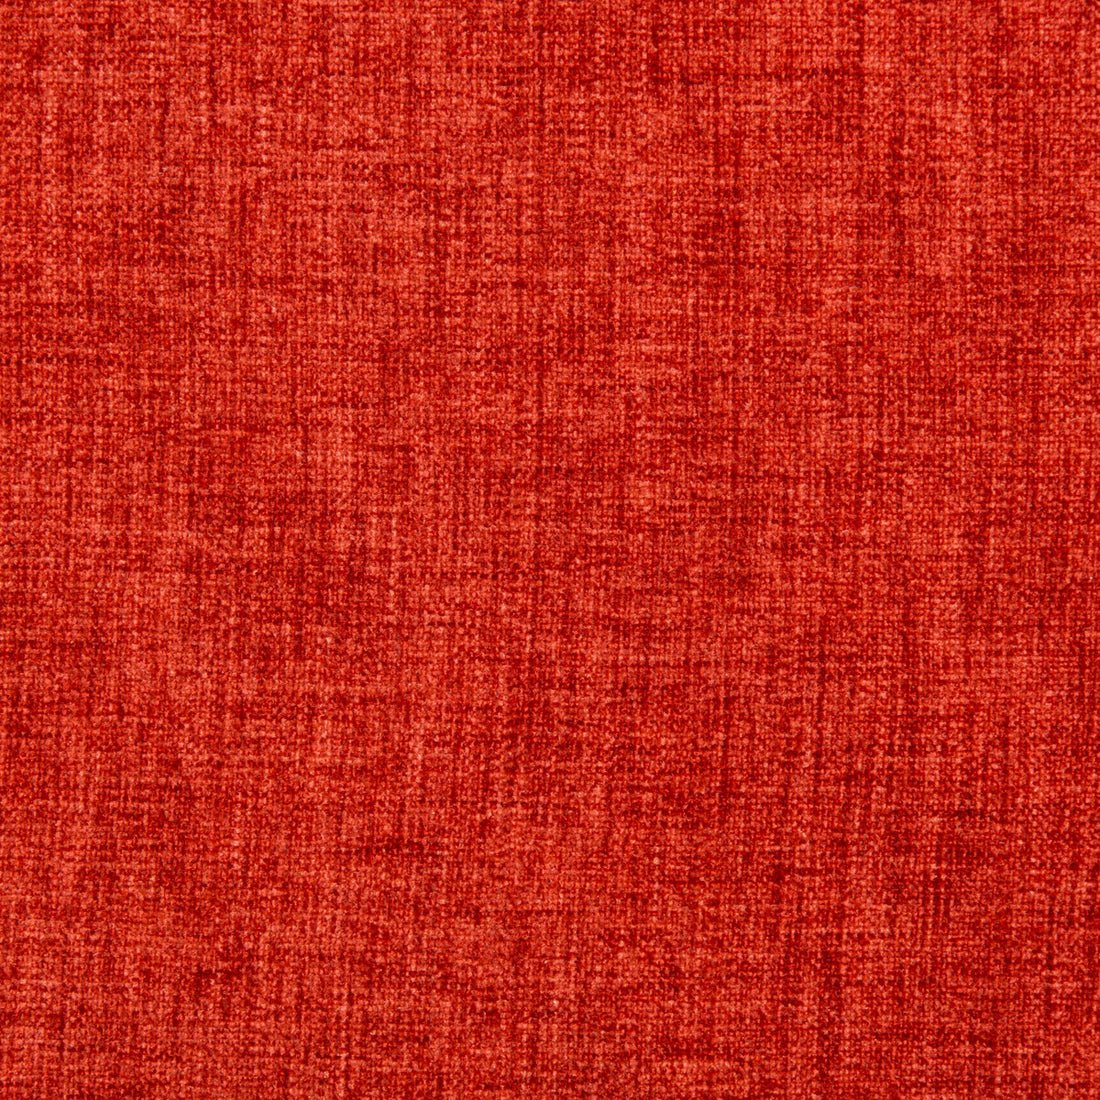 Kravet Basics fabric in 35775-19 color - pattern 35775.19.0 - by Kravet Basics